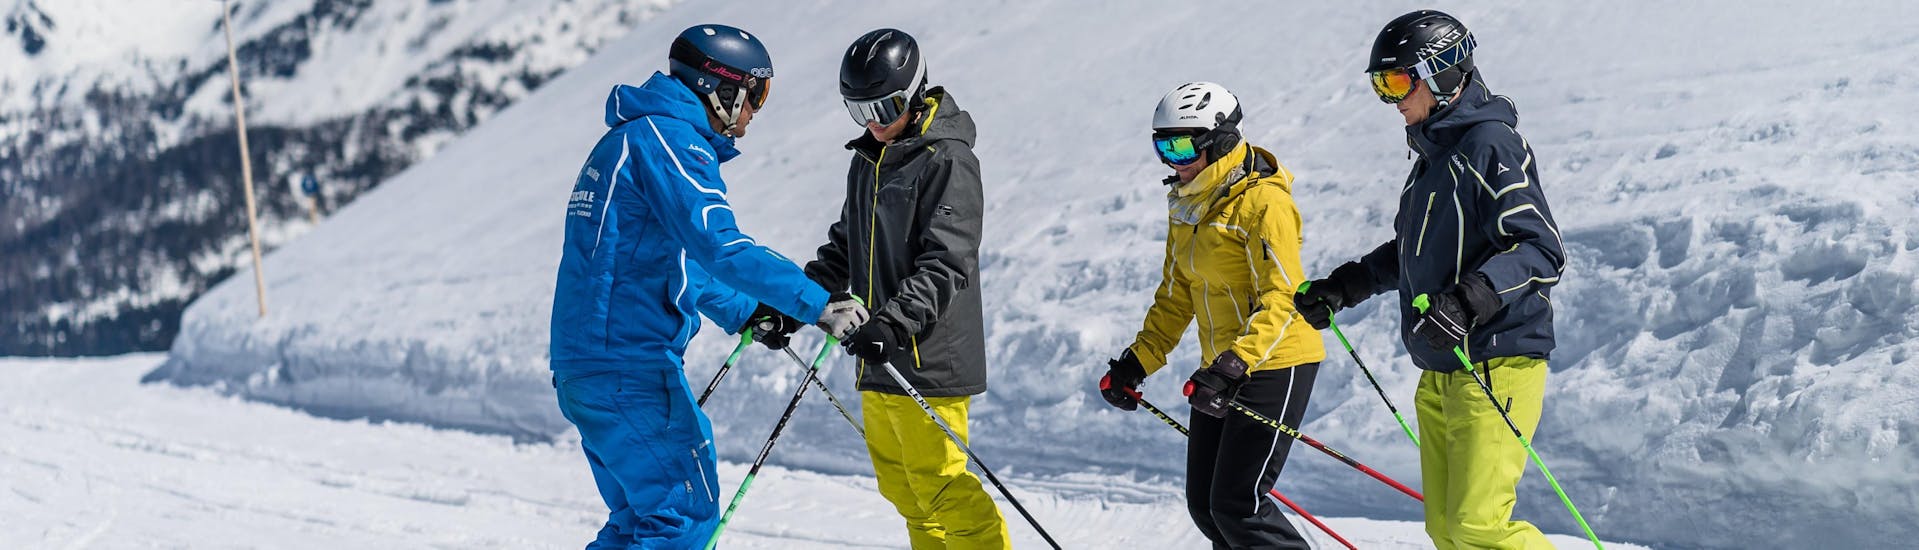 Skilessen voor volwassenen - Beginners.